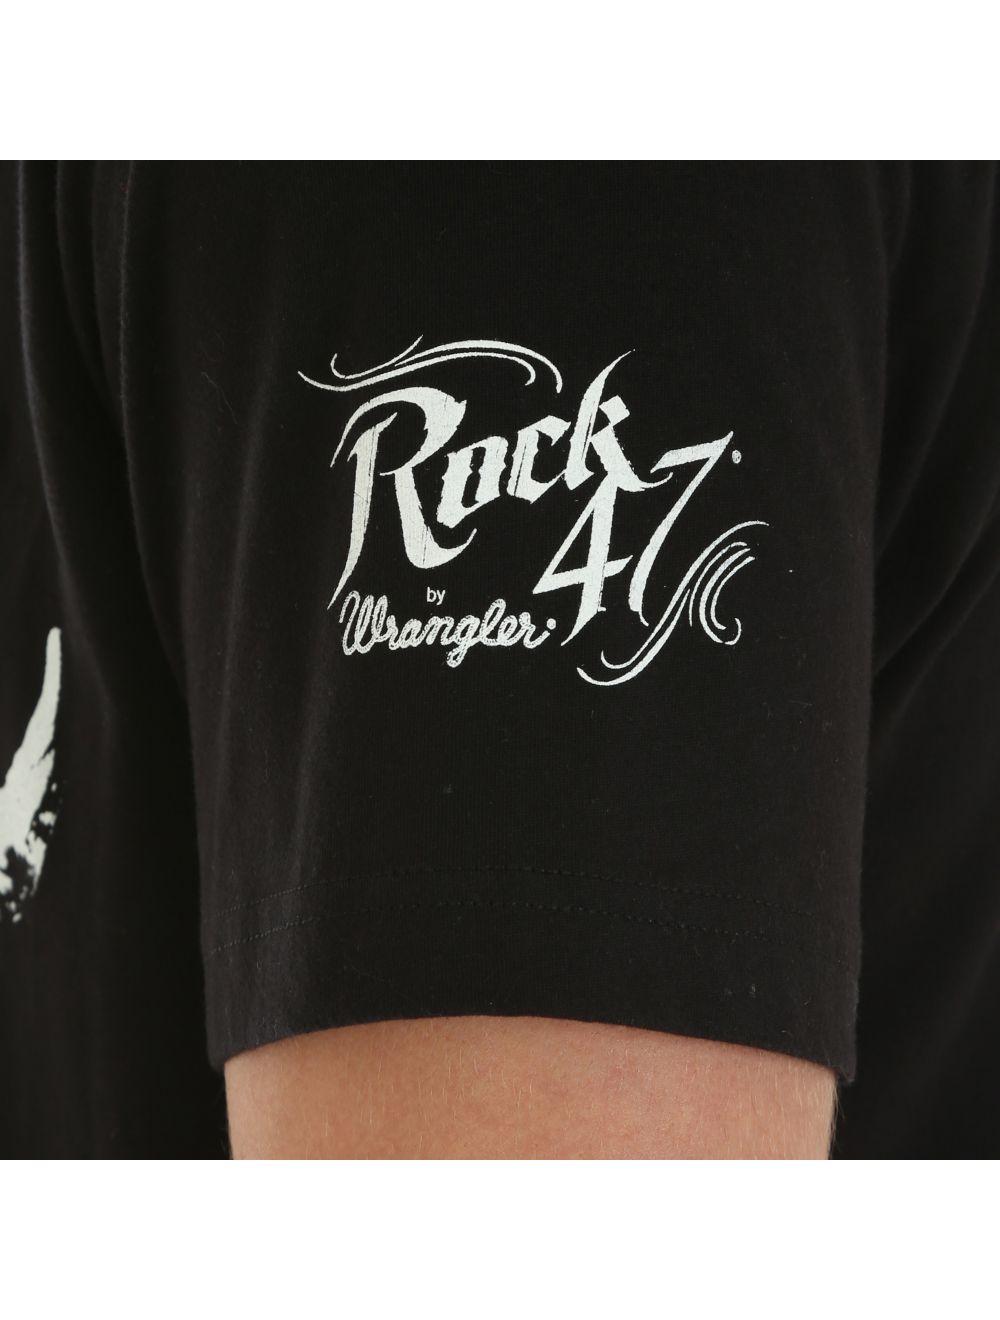 Wrangler Mens Rock 47 By Wrangler Short Sleeve T-Shirt